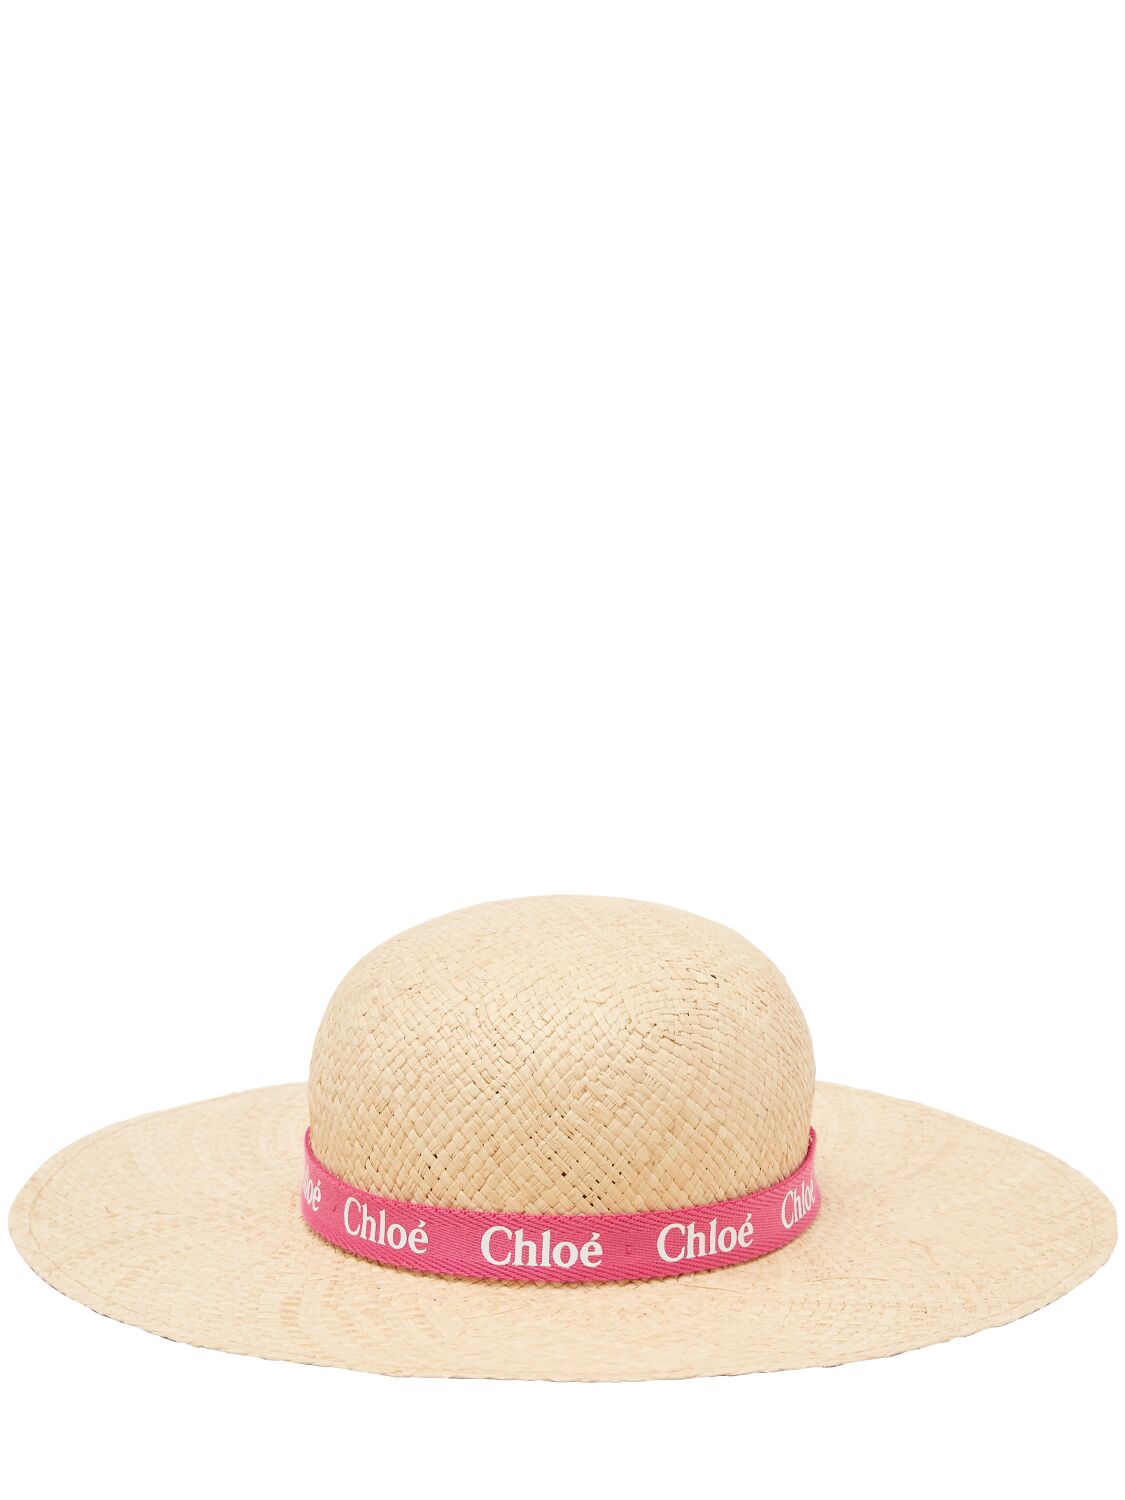 Chloé Kids' Woven Hat In Beige